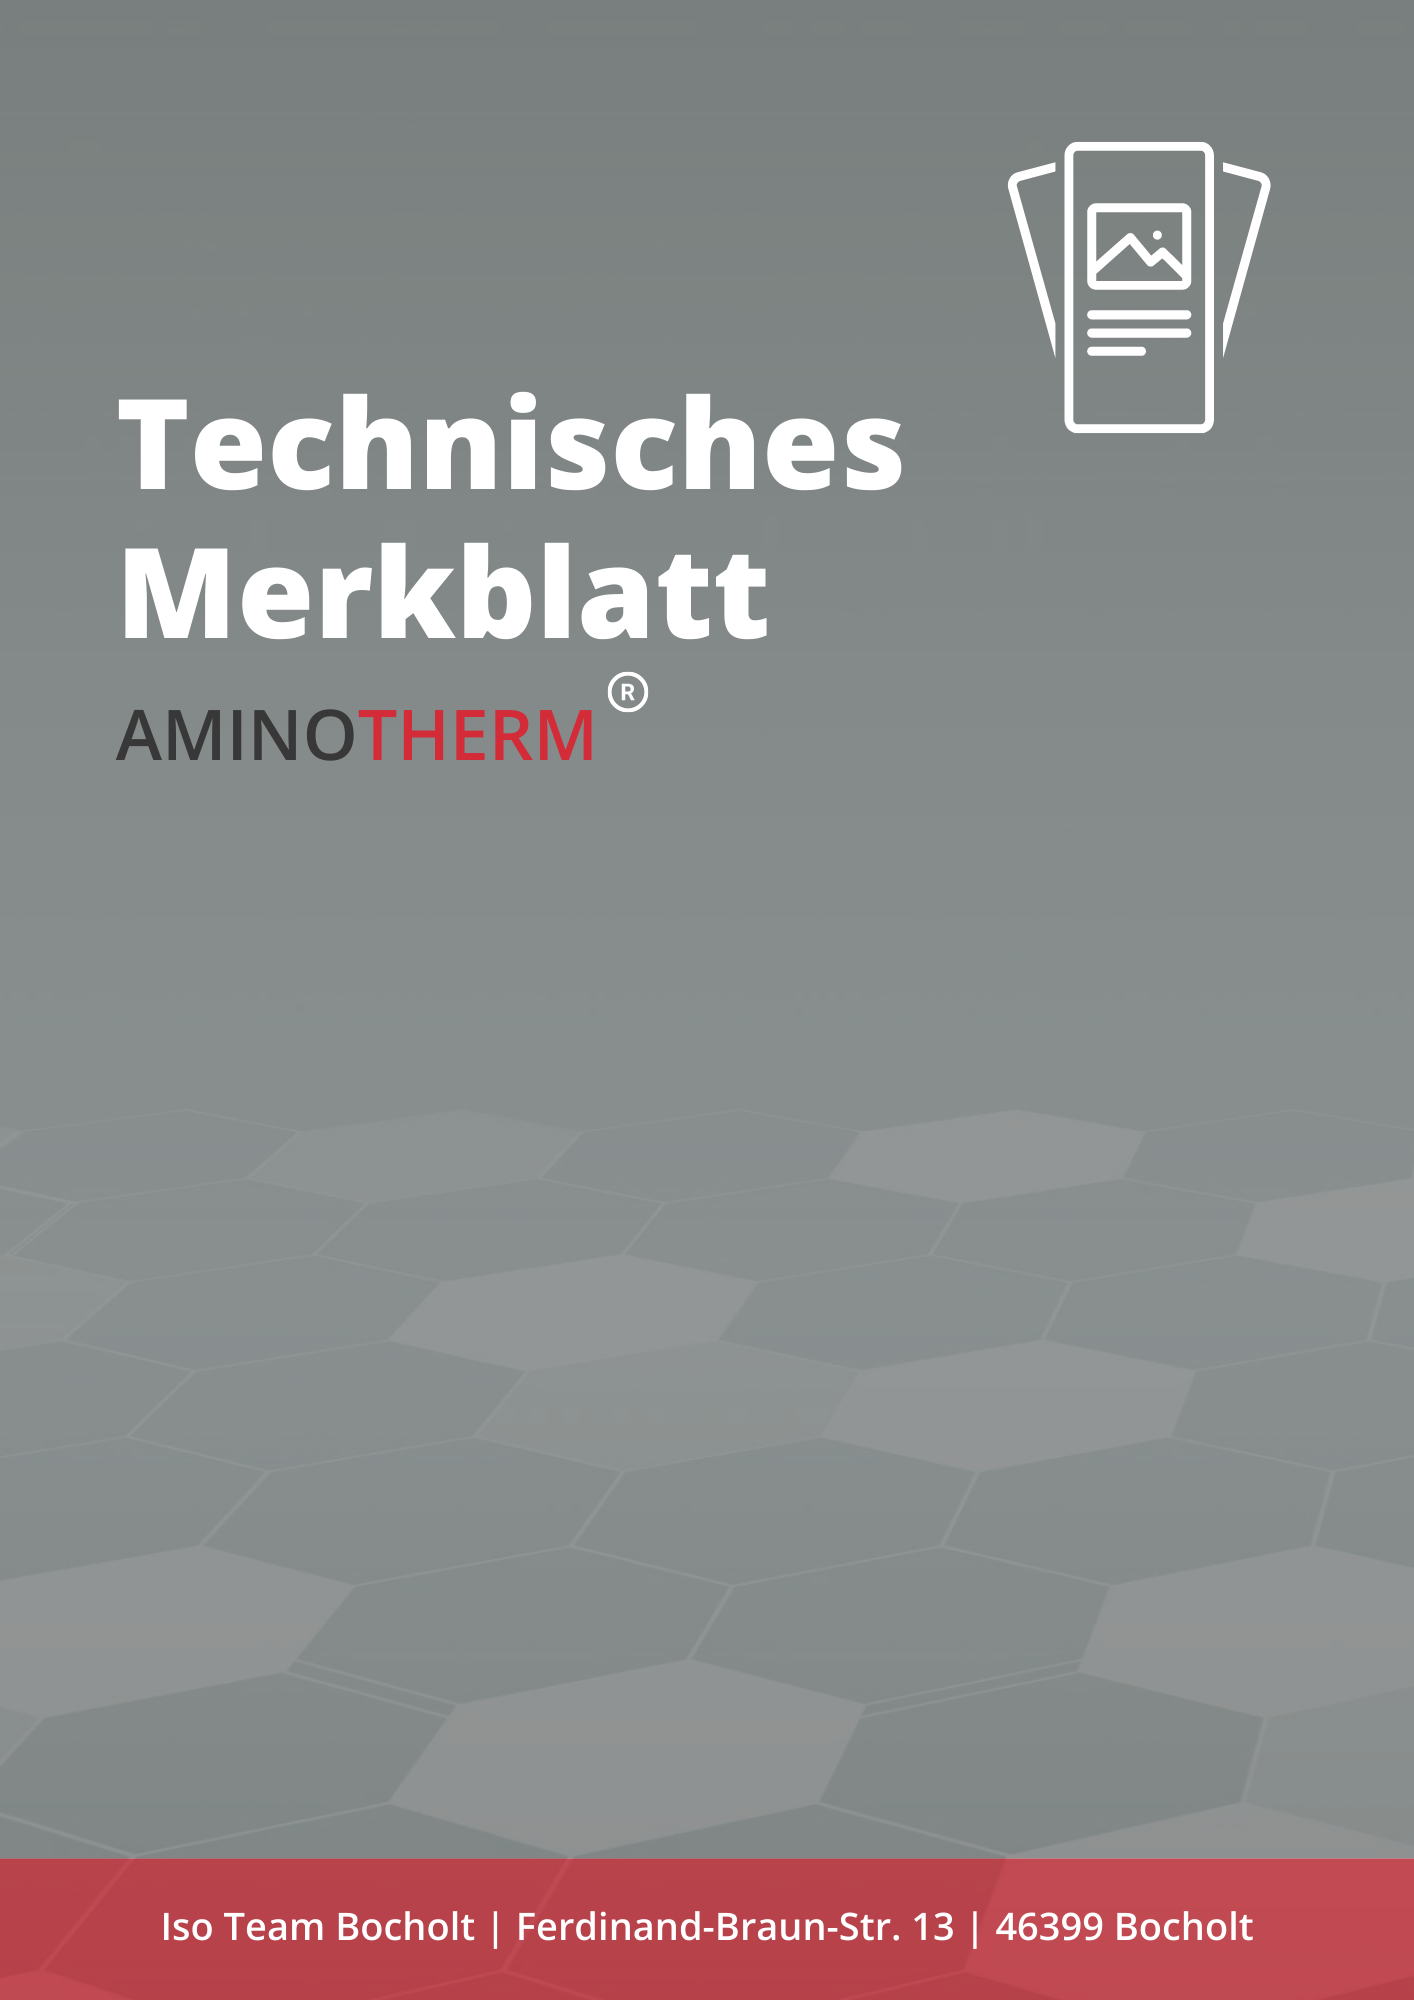 Technisches Merkblatt Aminotherm Download